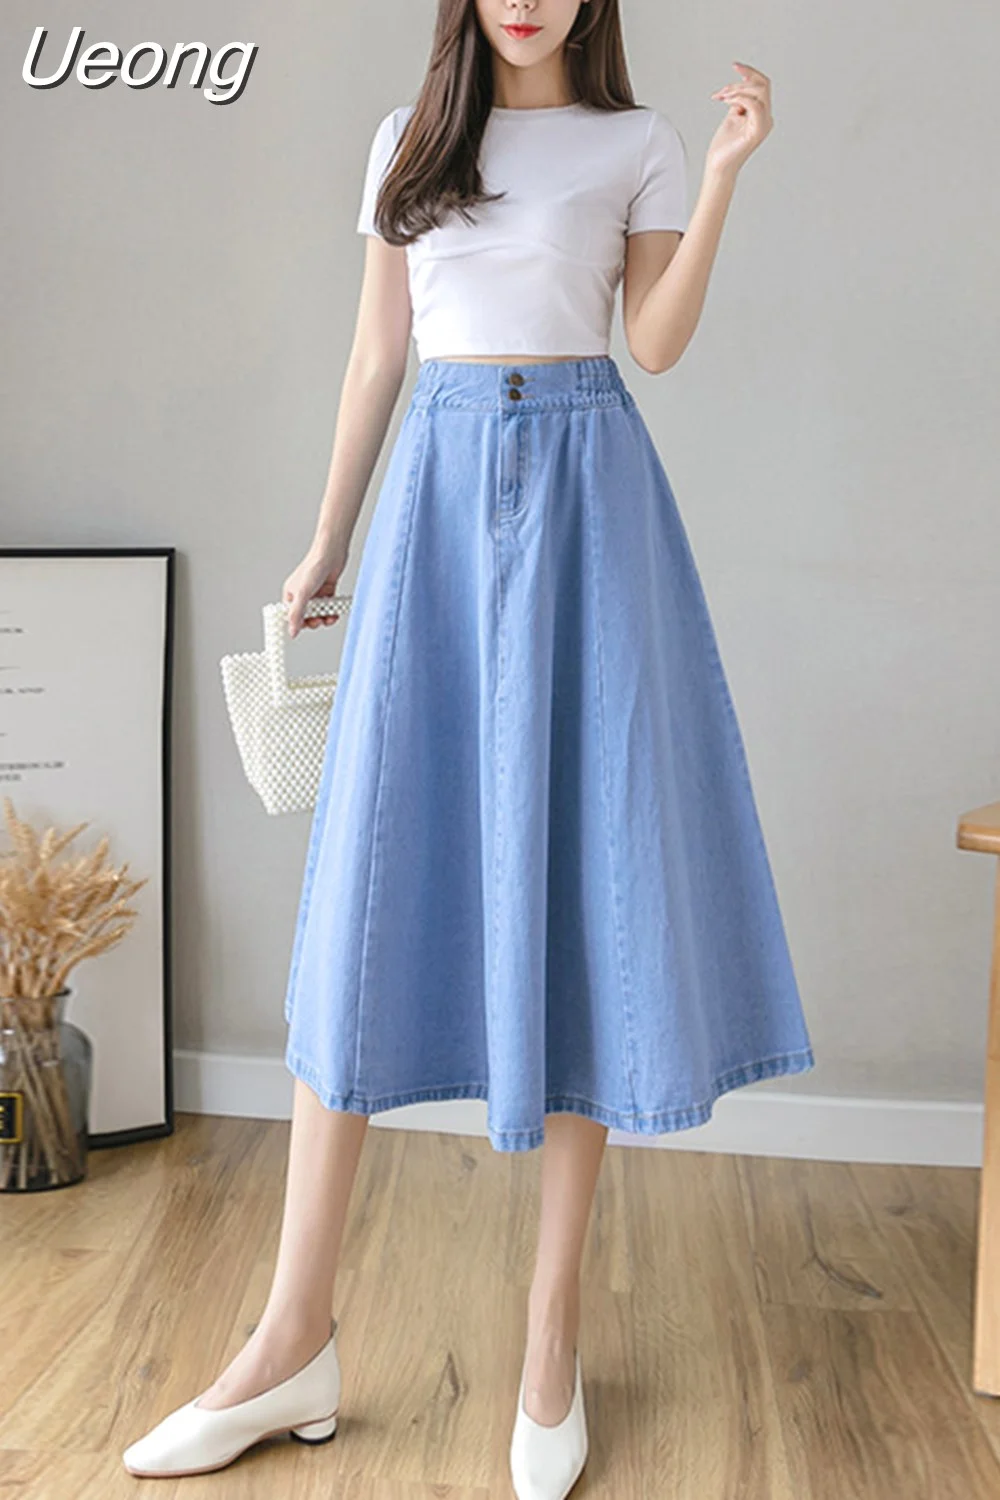 Ueong Elastic Waist Mid-length Denim Skirt Women Large Swing High Waist Casual Long Skirt QT1703